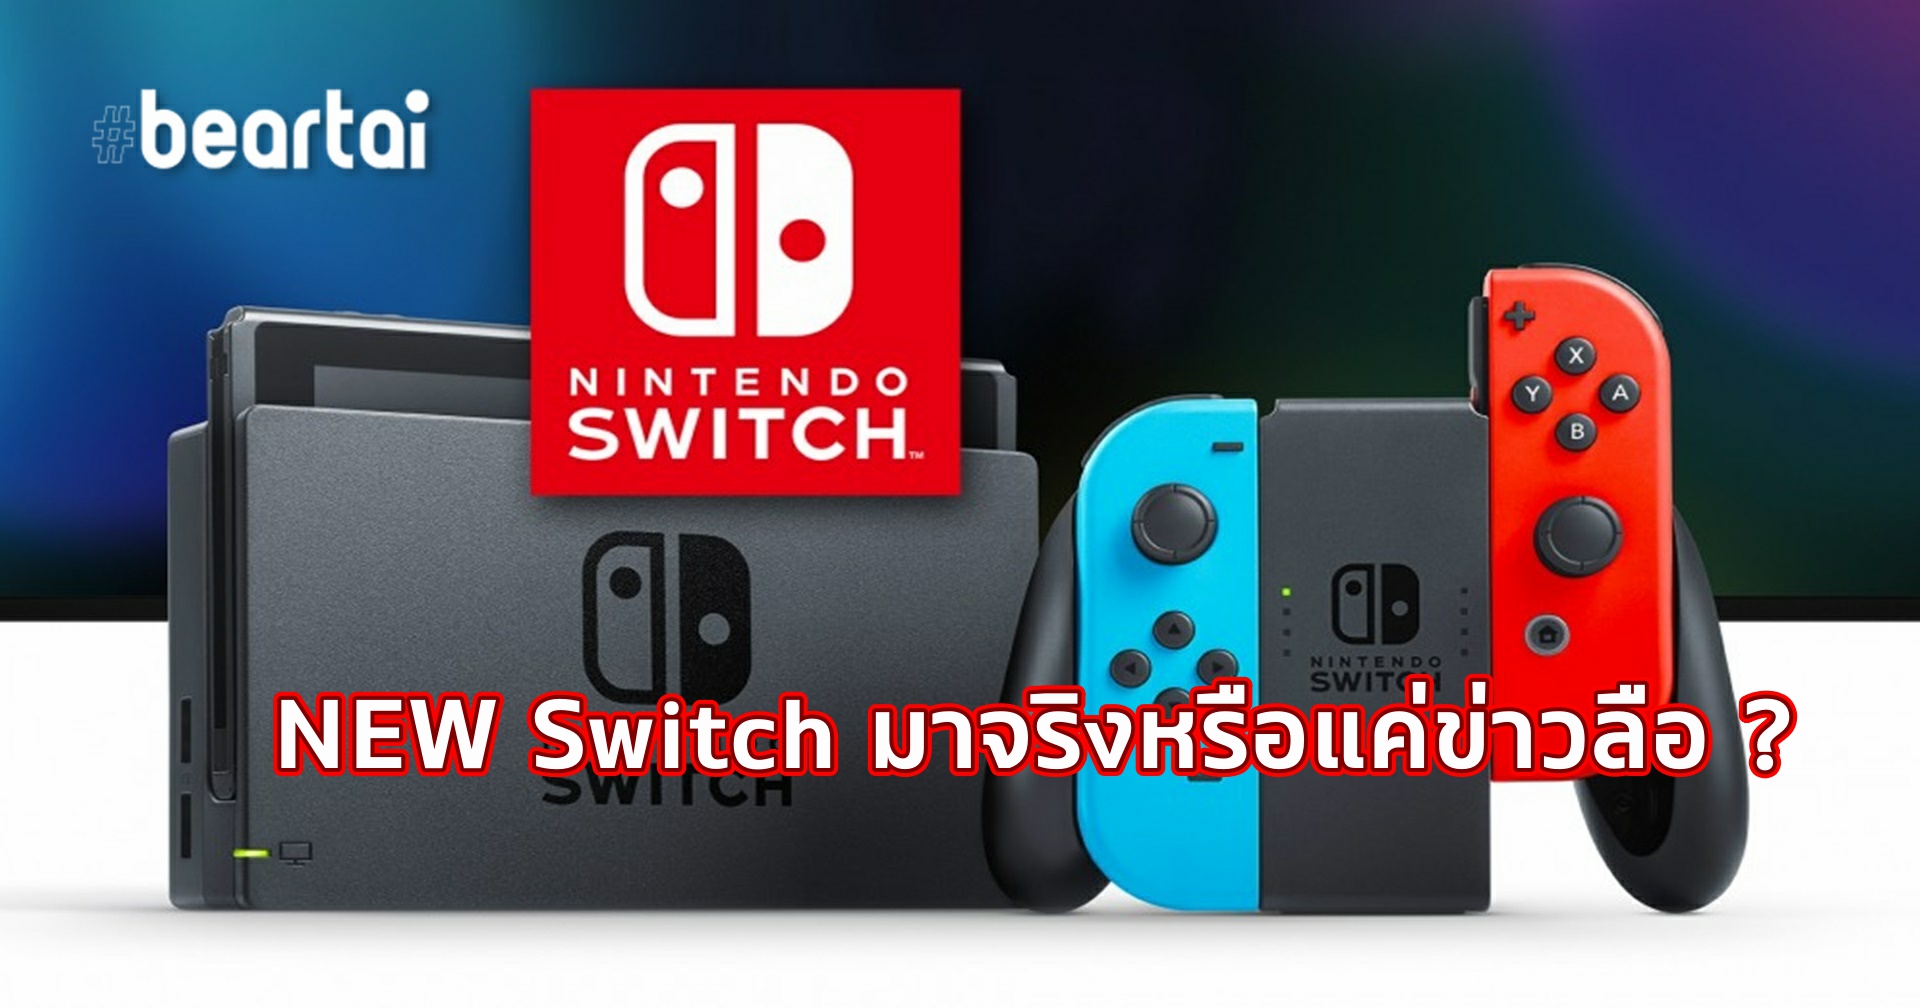 (บทความ) New Nintendo Switch จะมาหรือไม่ มาดูการอัปเกรดเครื่องเกมของปู่นินในอดีตกัน